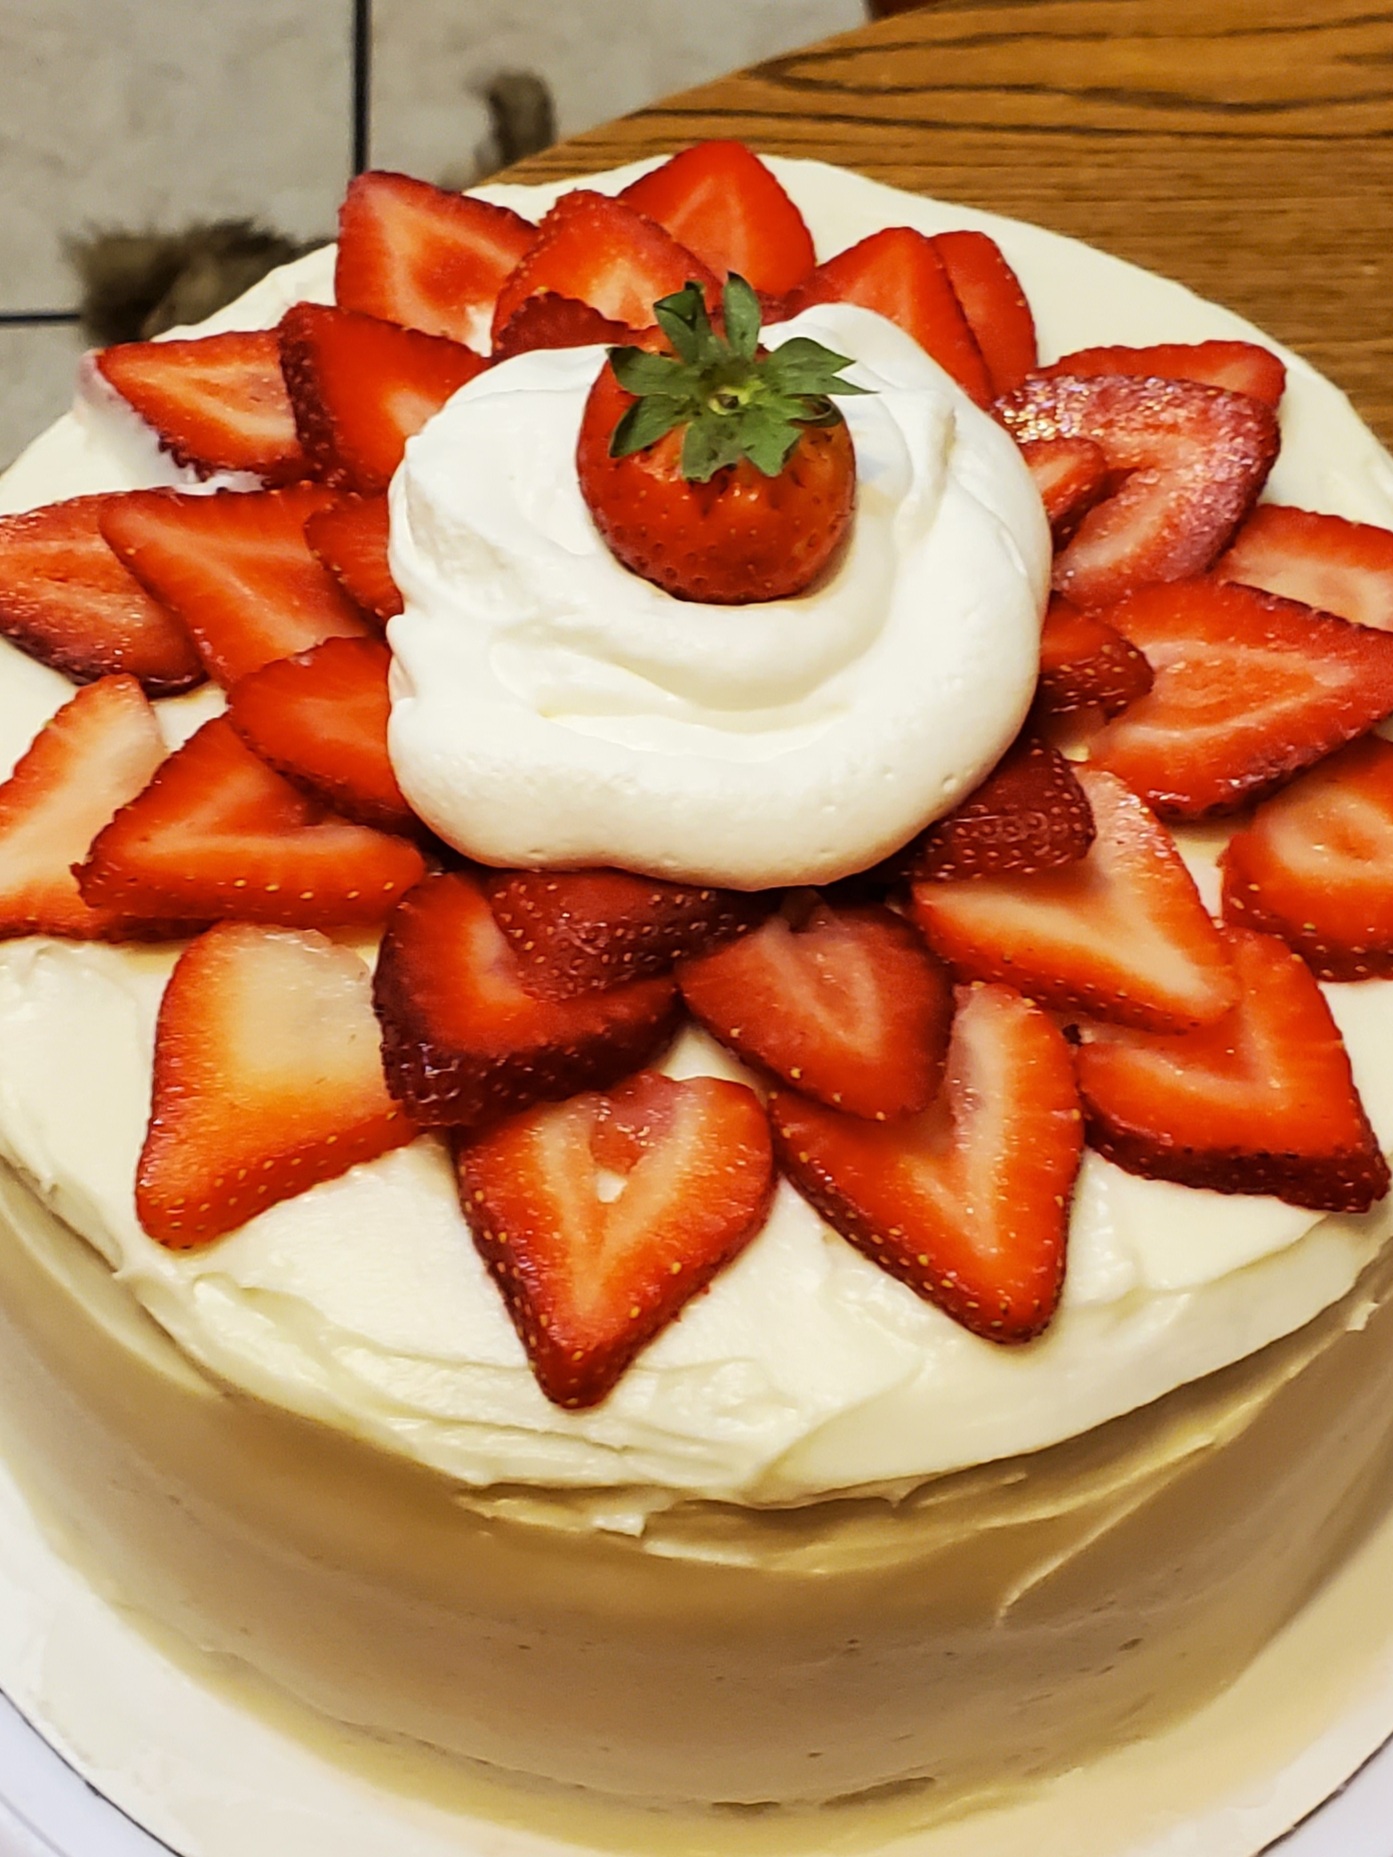 Strawberries and Cream Cake 